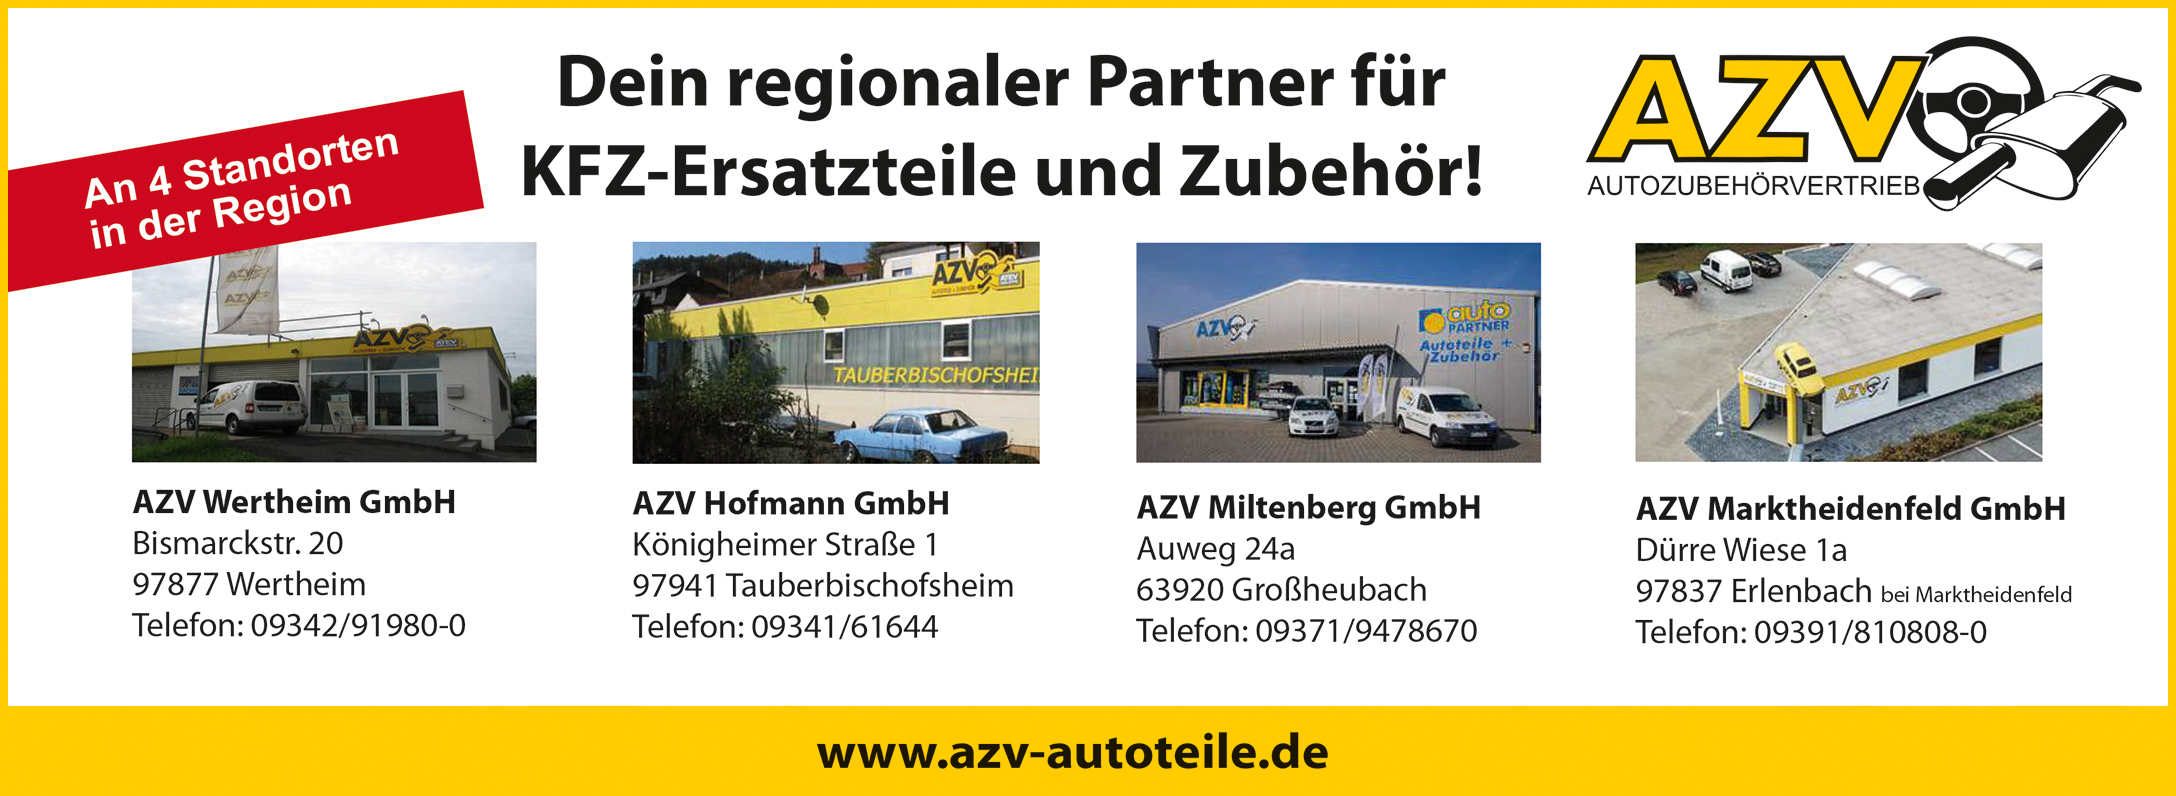 AZV Autoteile GmbH